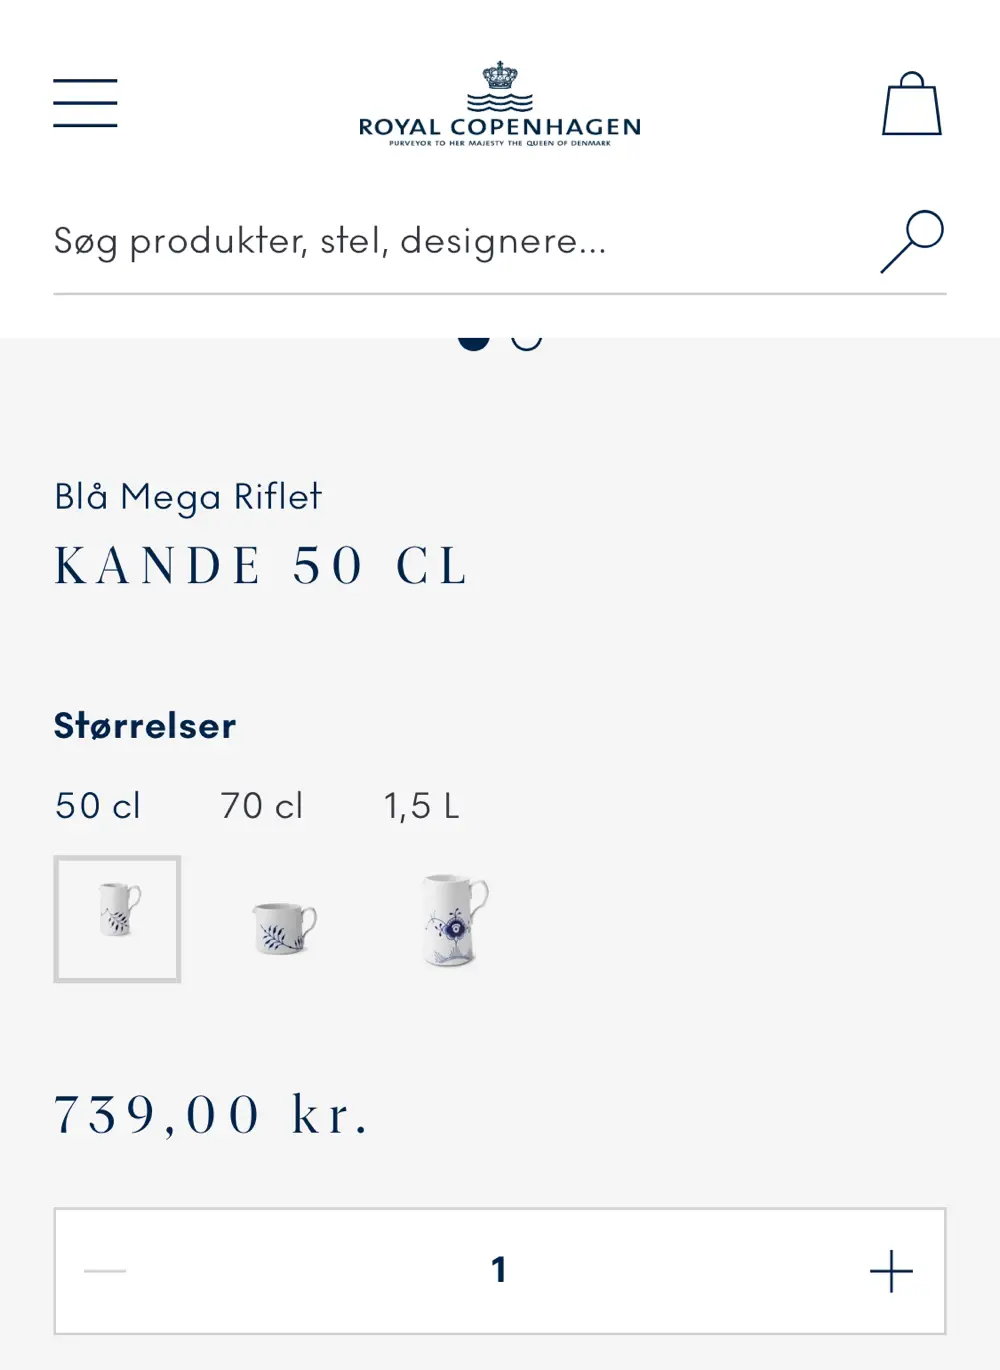 royal copenhagen Kande 50 cl